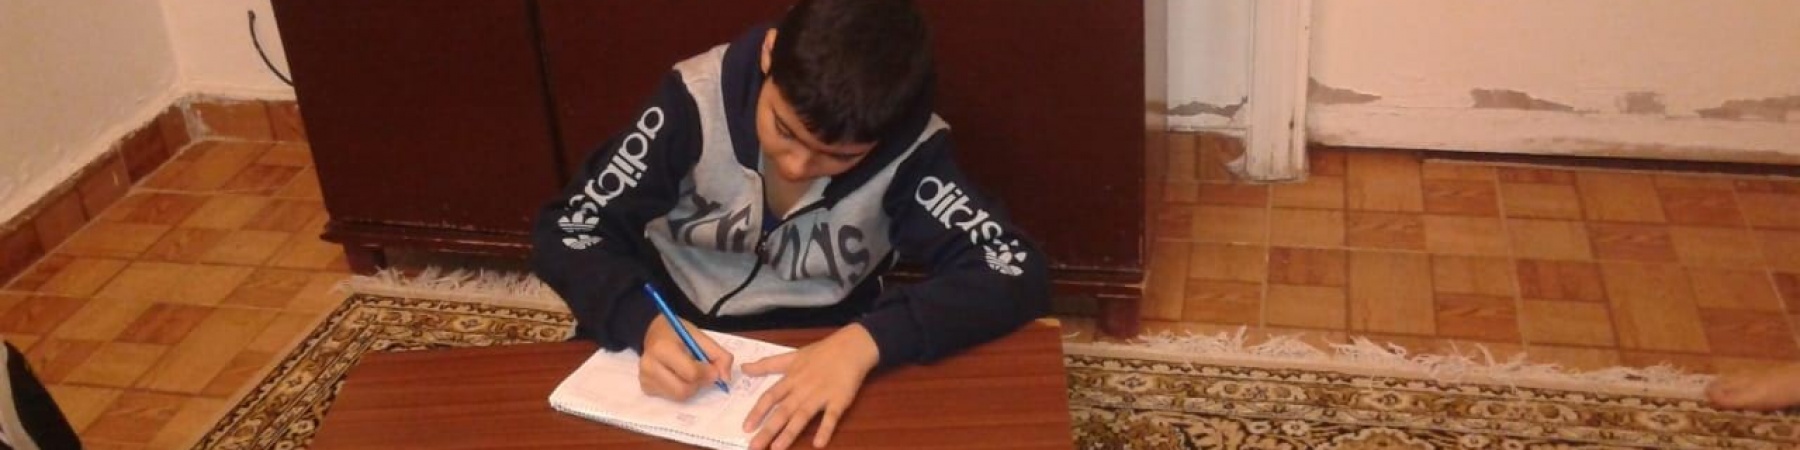 Bambino libanese di circa 12 anni è seduto a terra su un tappeto e scrive su un figlio bianco appoggiato a una tavolo di legno.